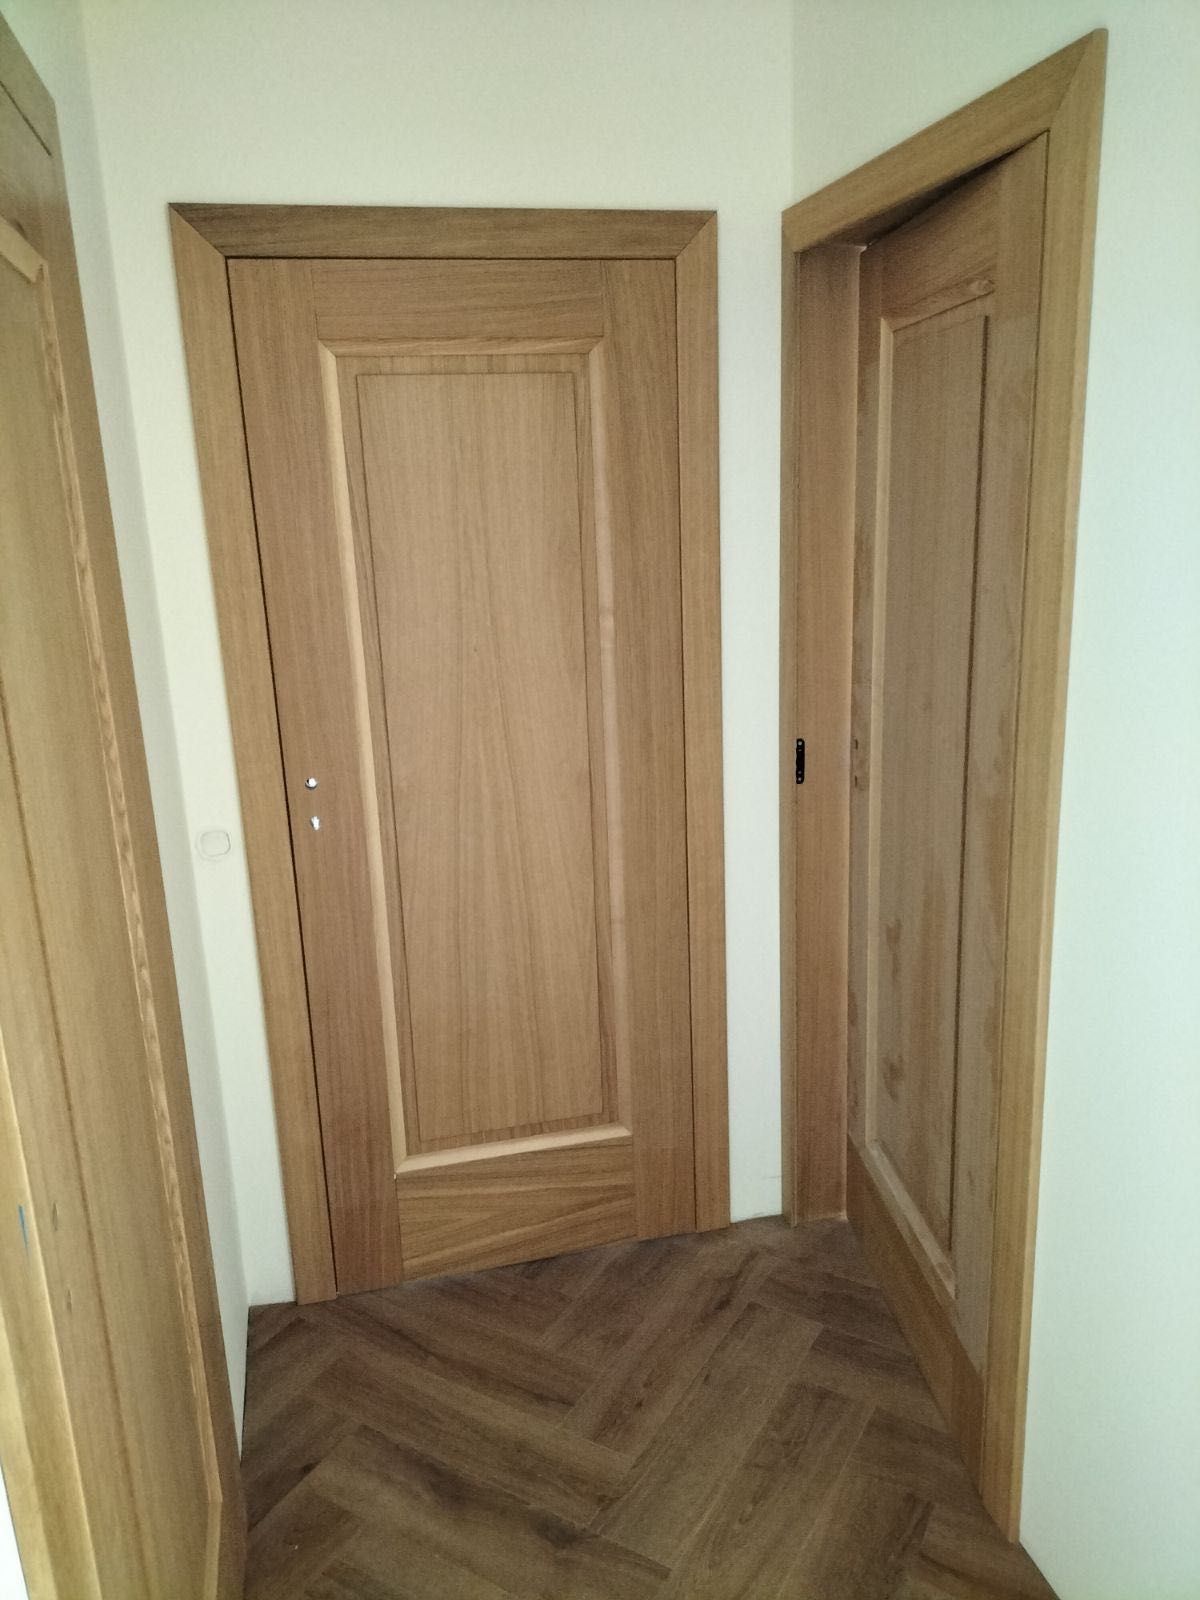 Drzwi wewnętrzne drewniane dębowe